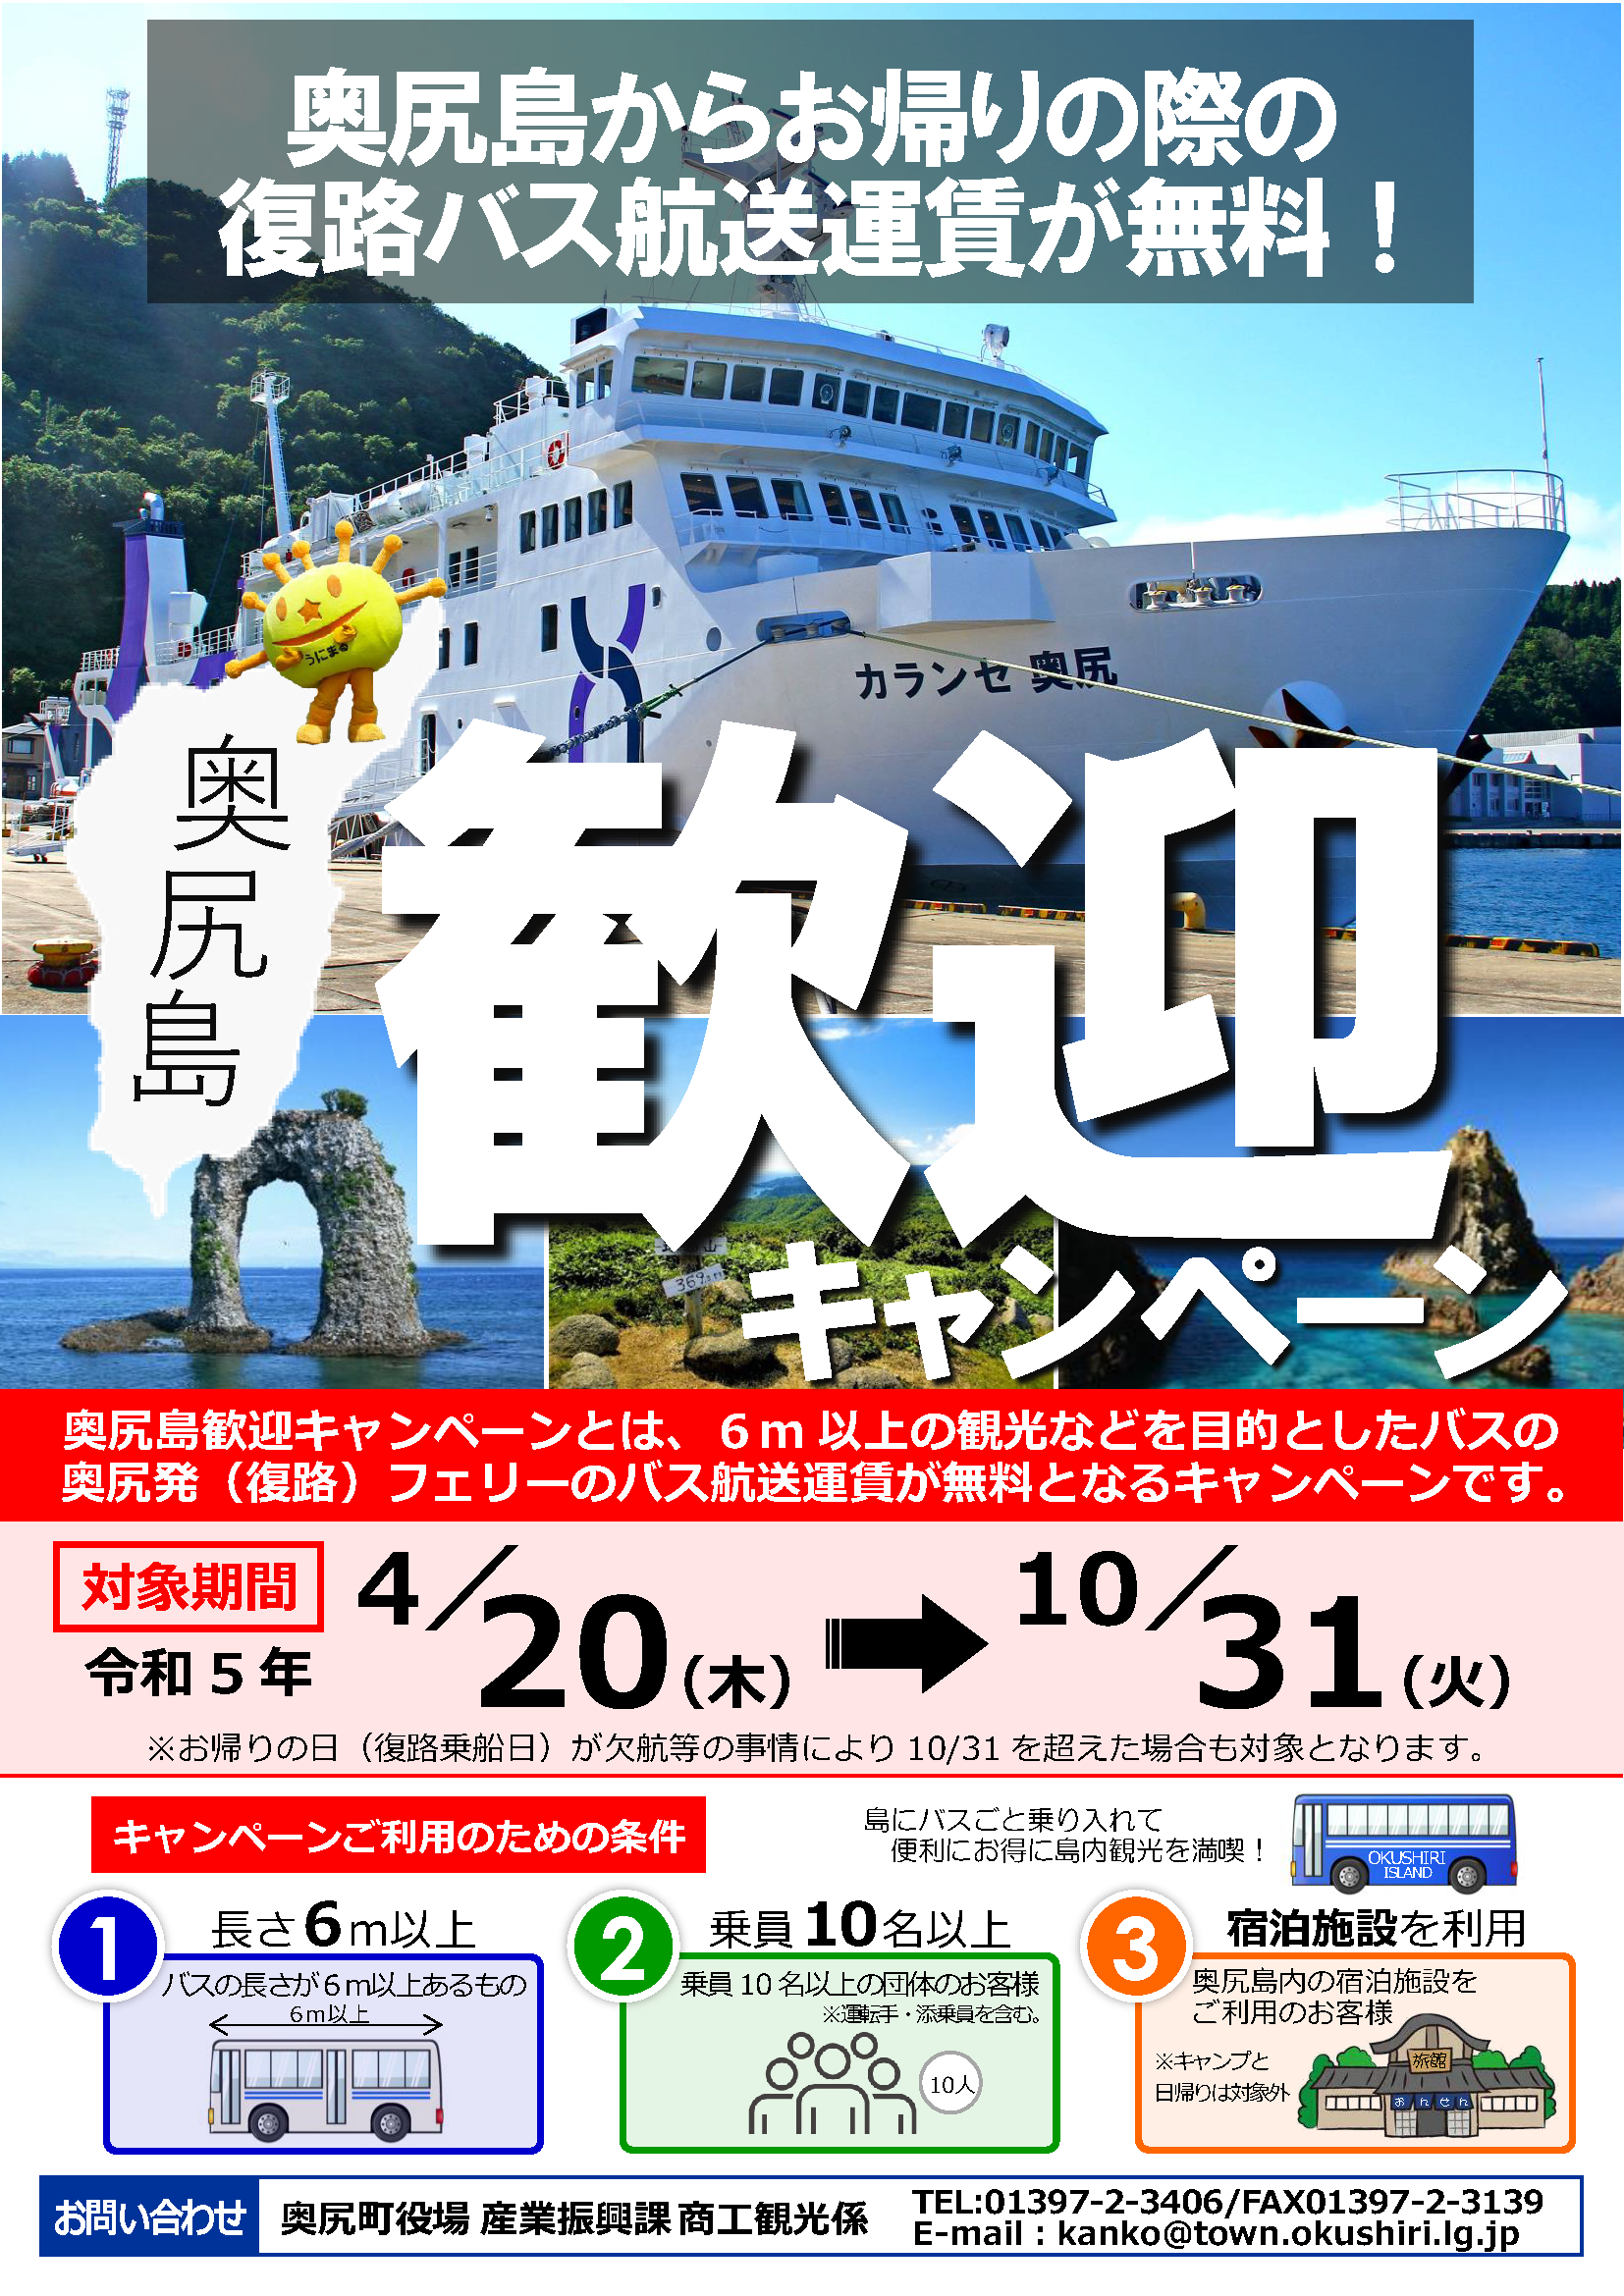 奥尻島観光歓迎キャンペーン